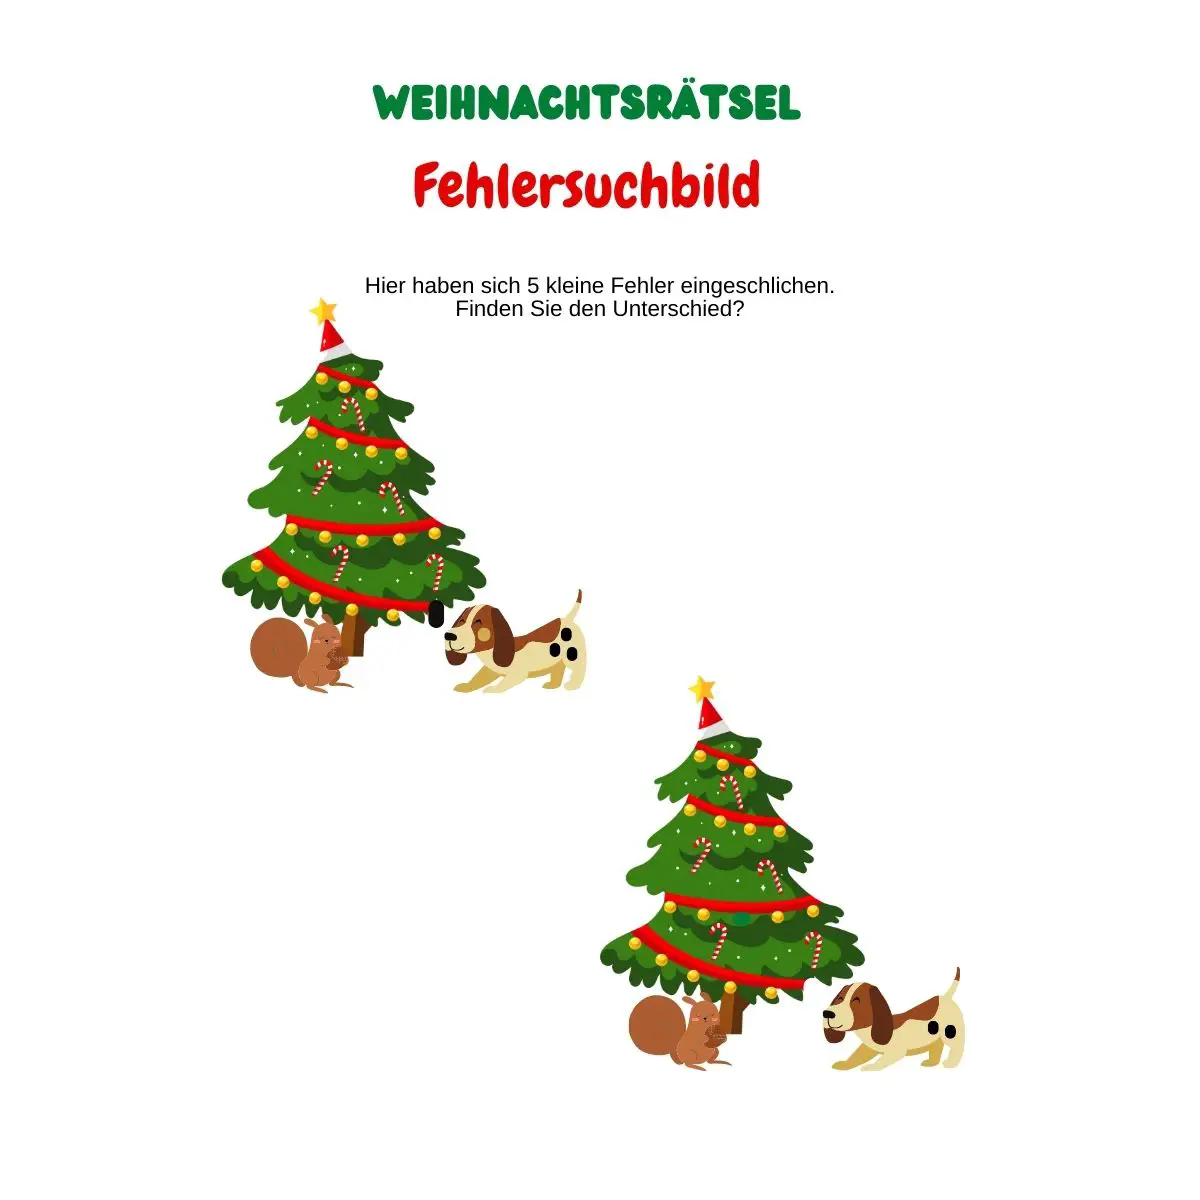 Fehlersuchbild mit Weihnachtsbaum, Eichhörnchen und Hund.